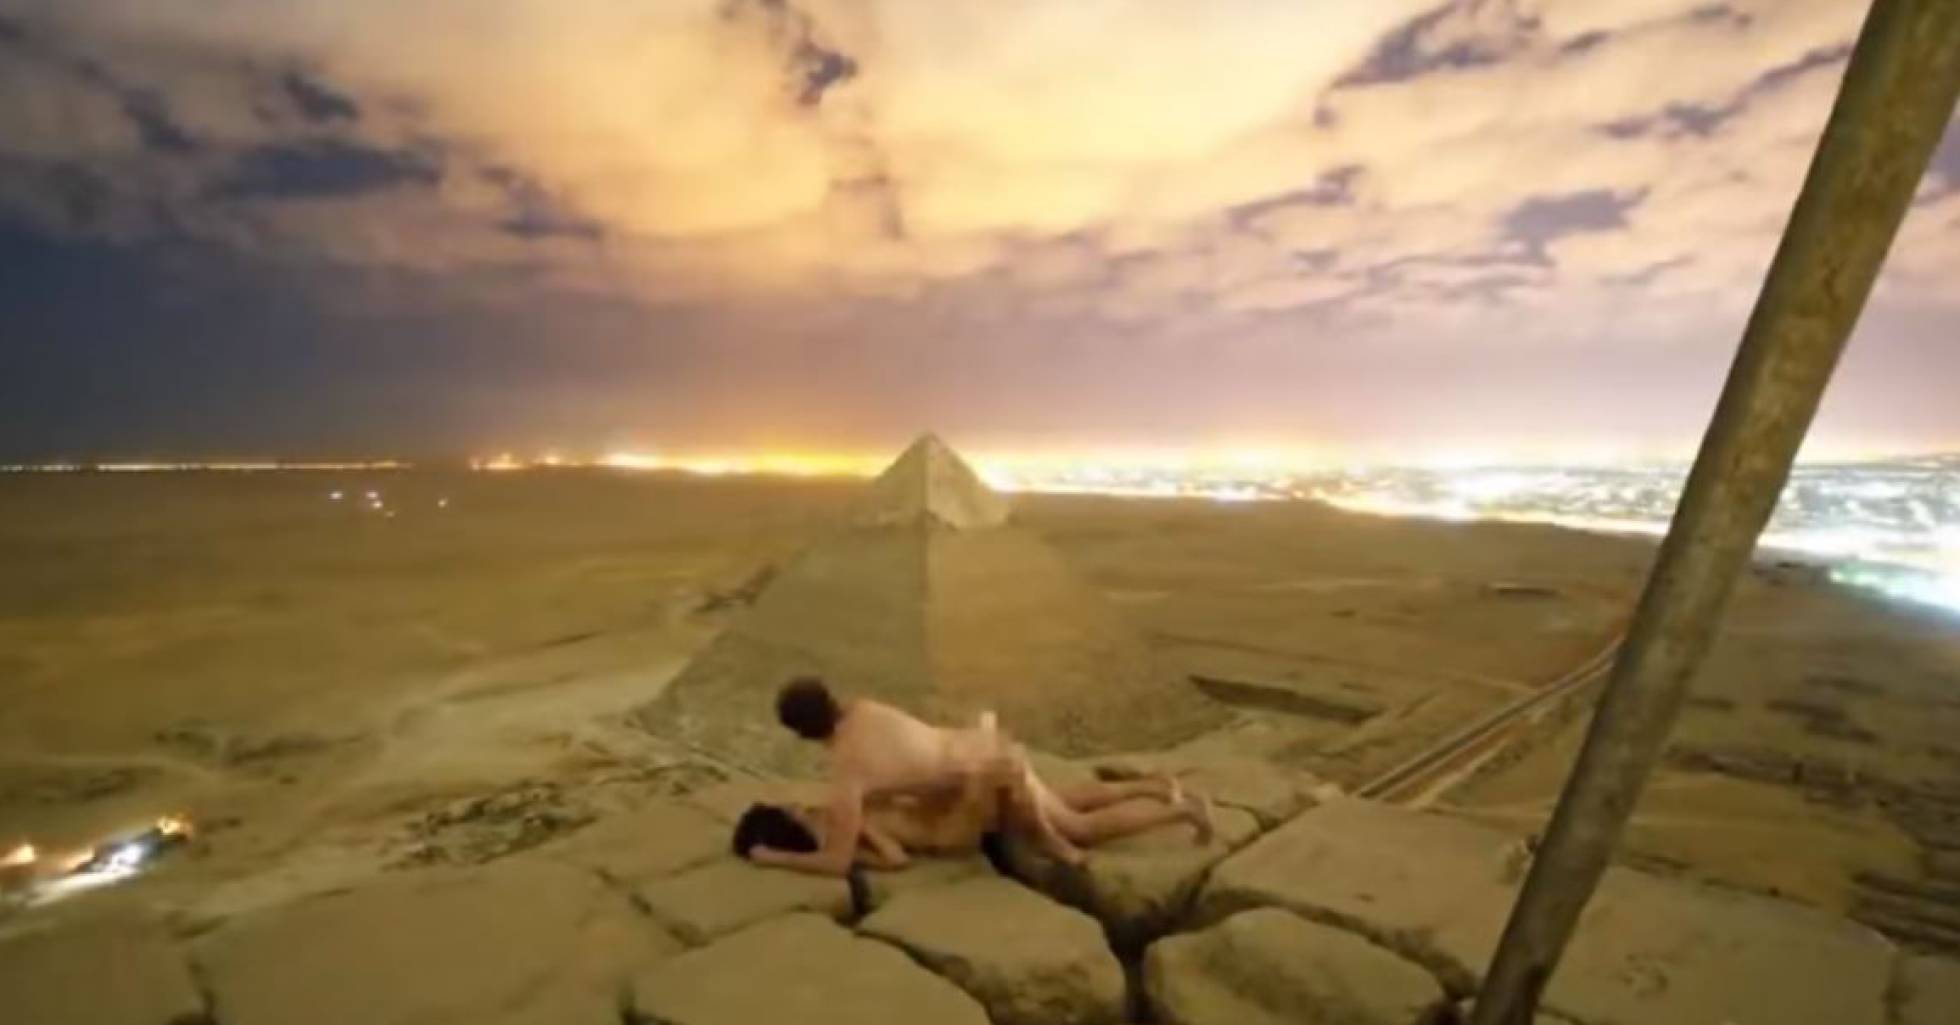 casal fazendo sexo em cima da pirâmide